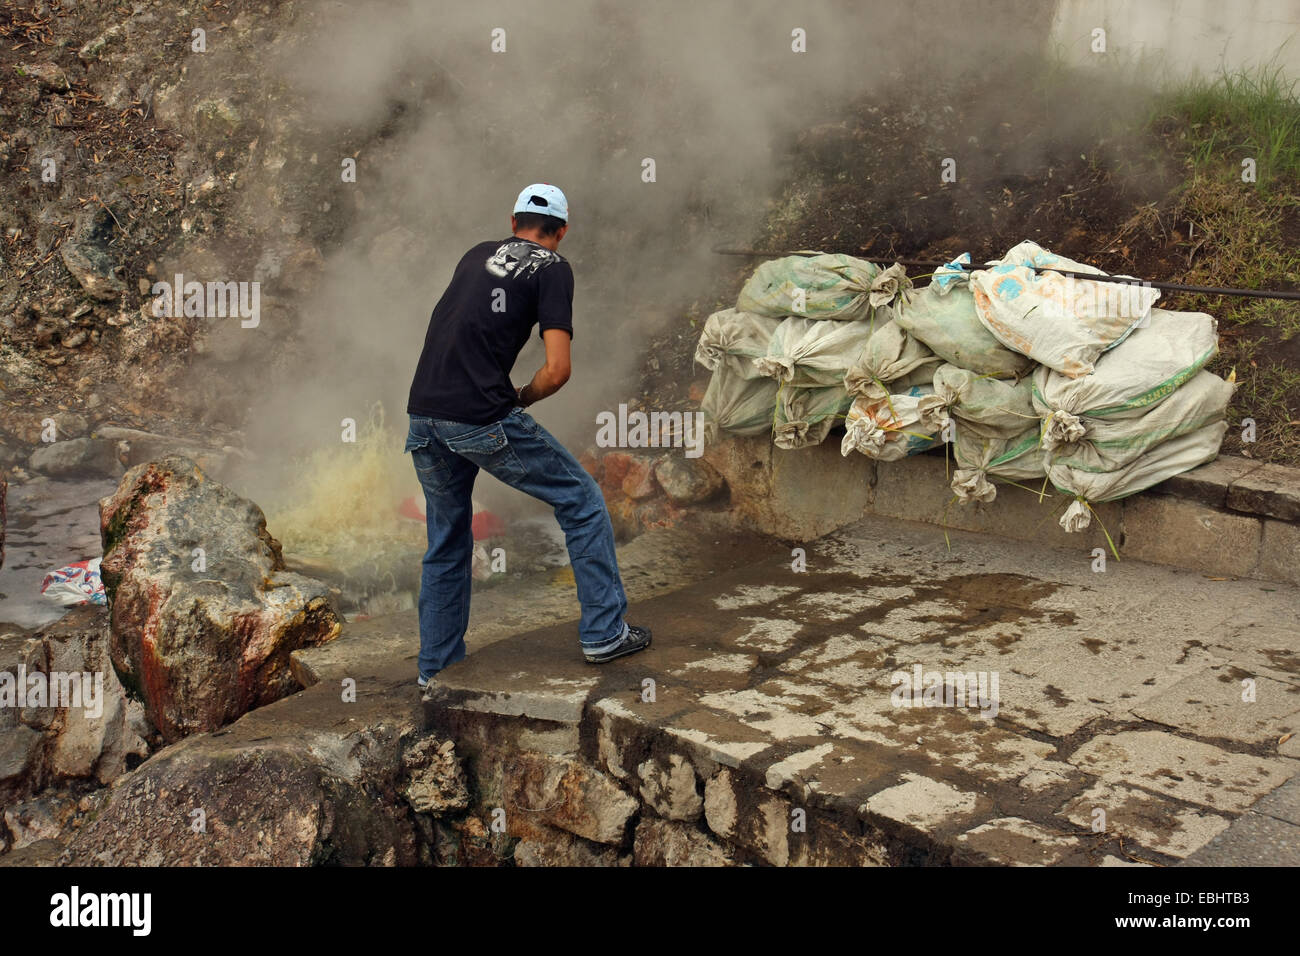 Mann kochen sacs von Maiskolben in einer heißen Quelle mit natürlich kochendes Wasser in Furnas, Insel São Miguel, Azoren, Portugal. Stockfoto